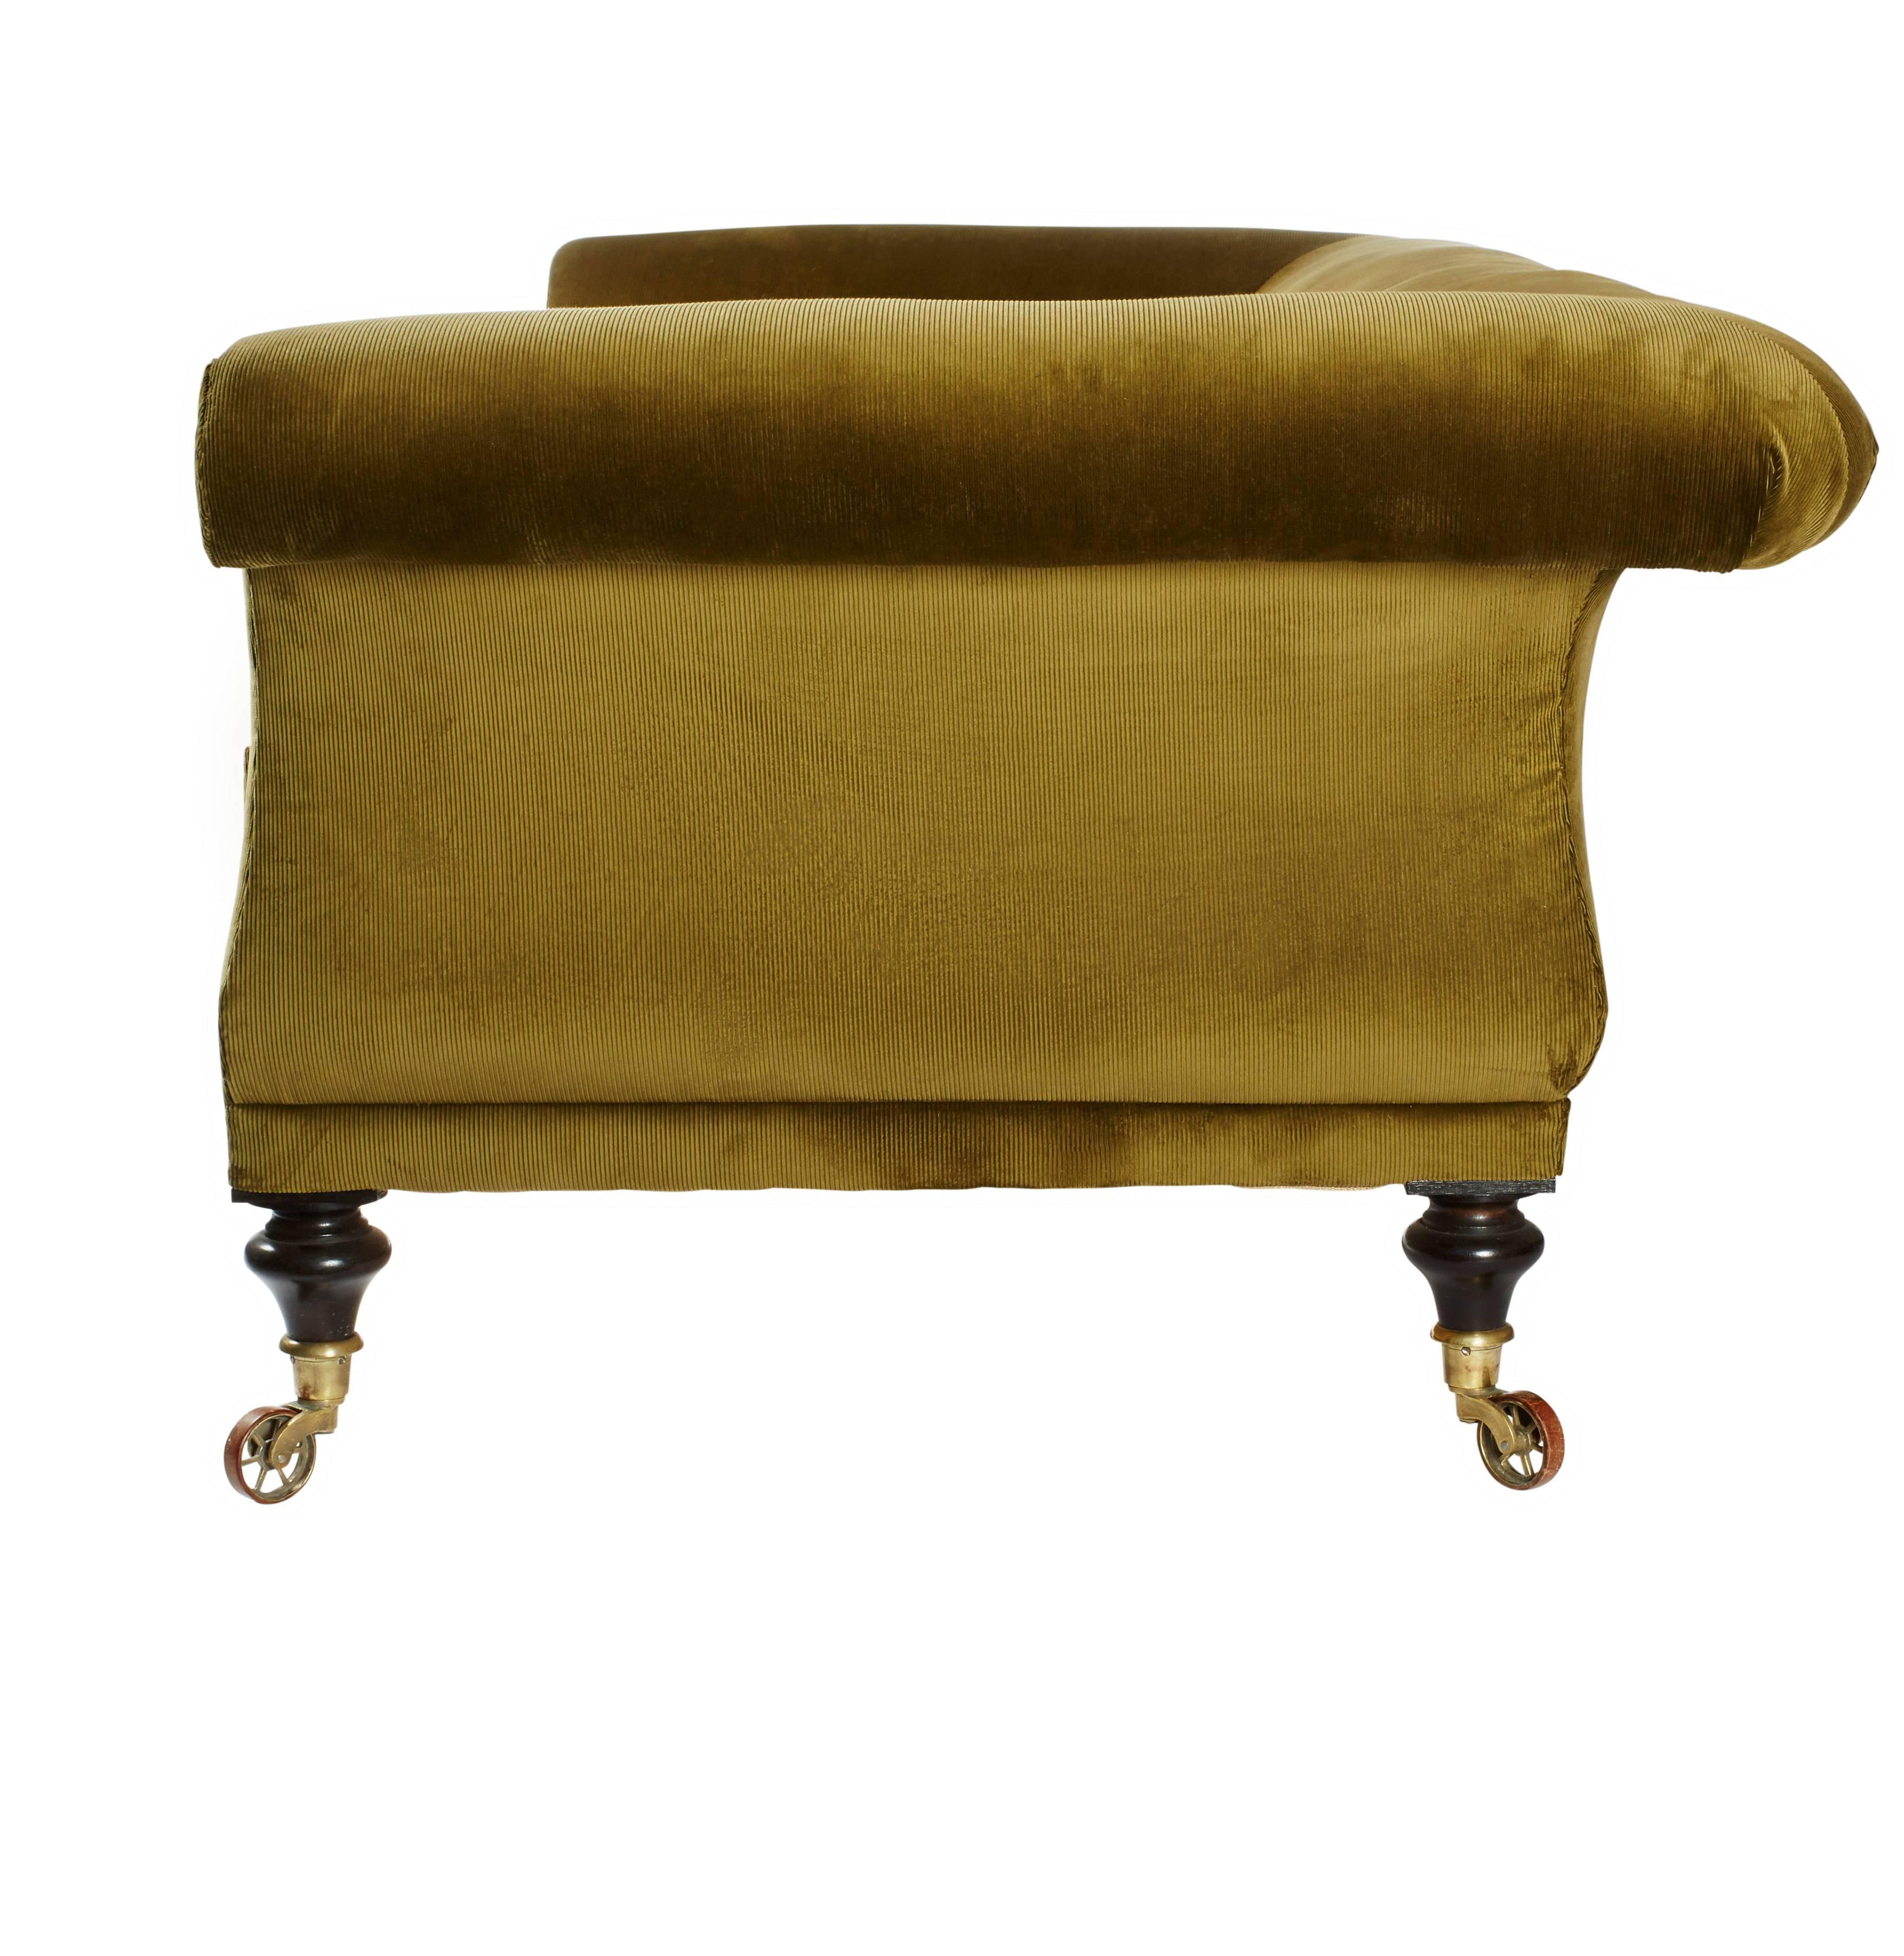 Hand-Crafted Upholstered 'Kinross' Regency-Inspired Sofa by Ensemblier, Bespoke For Sale